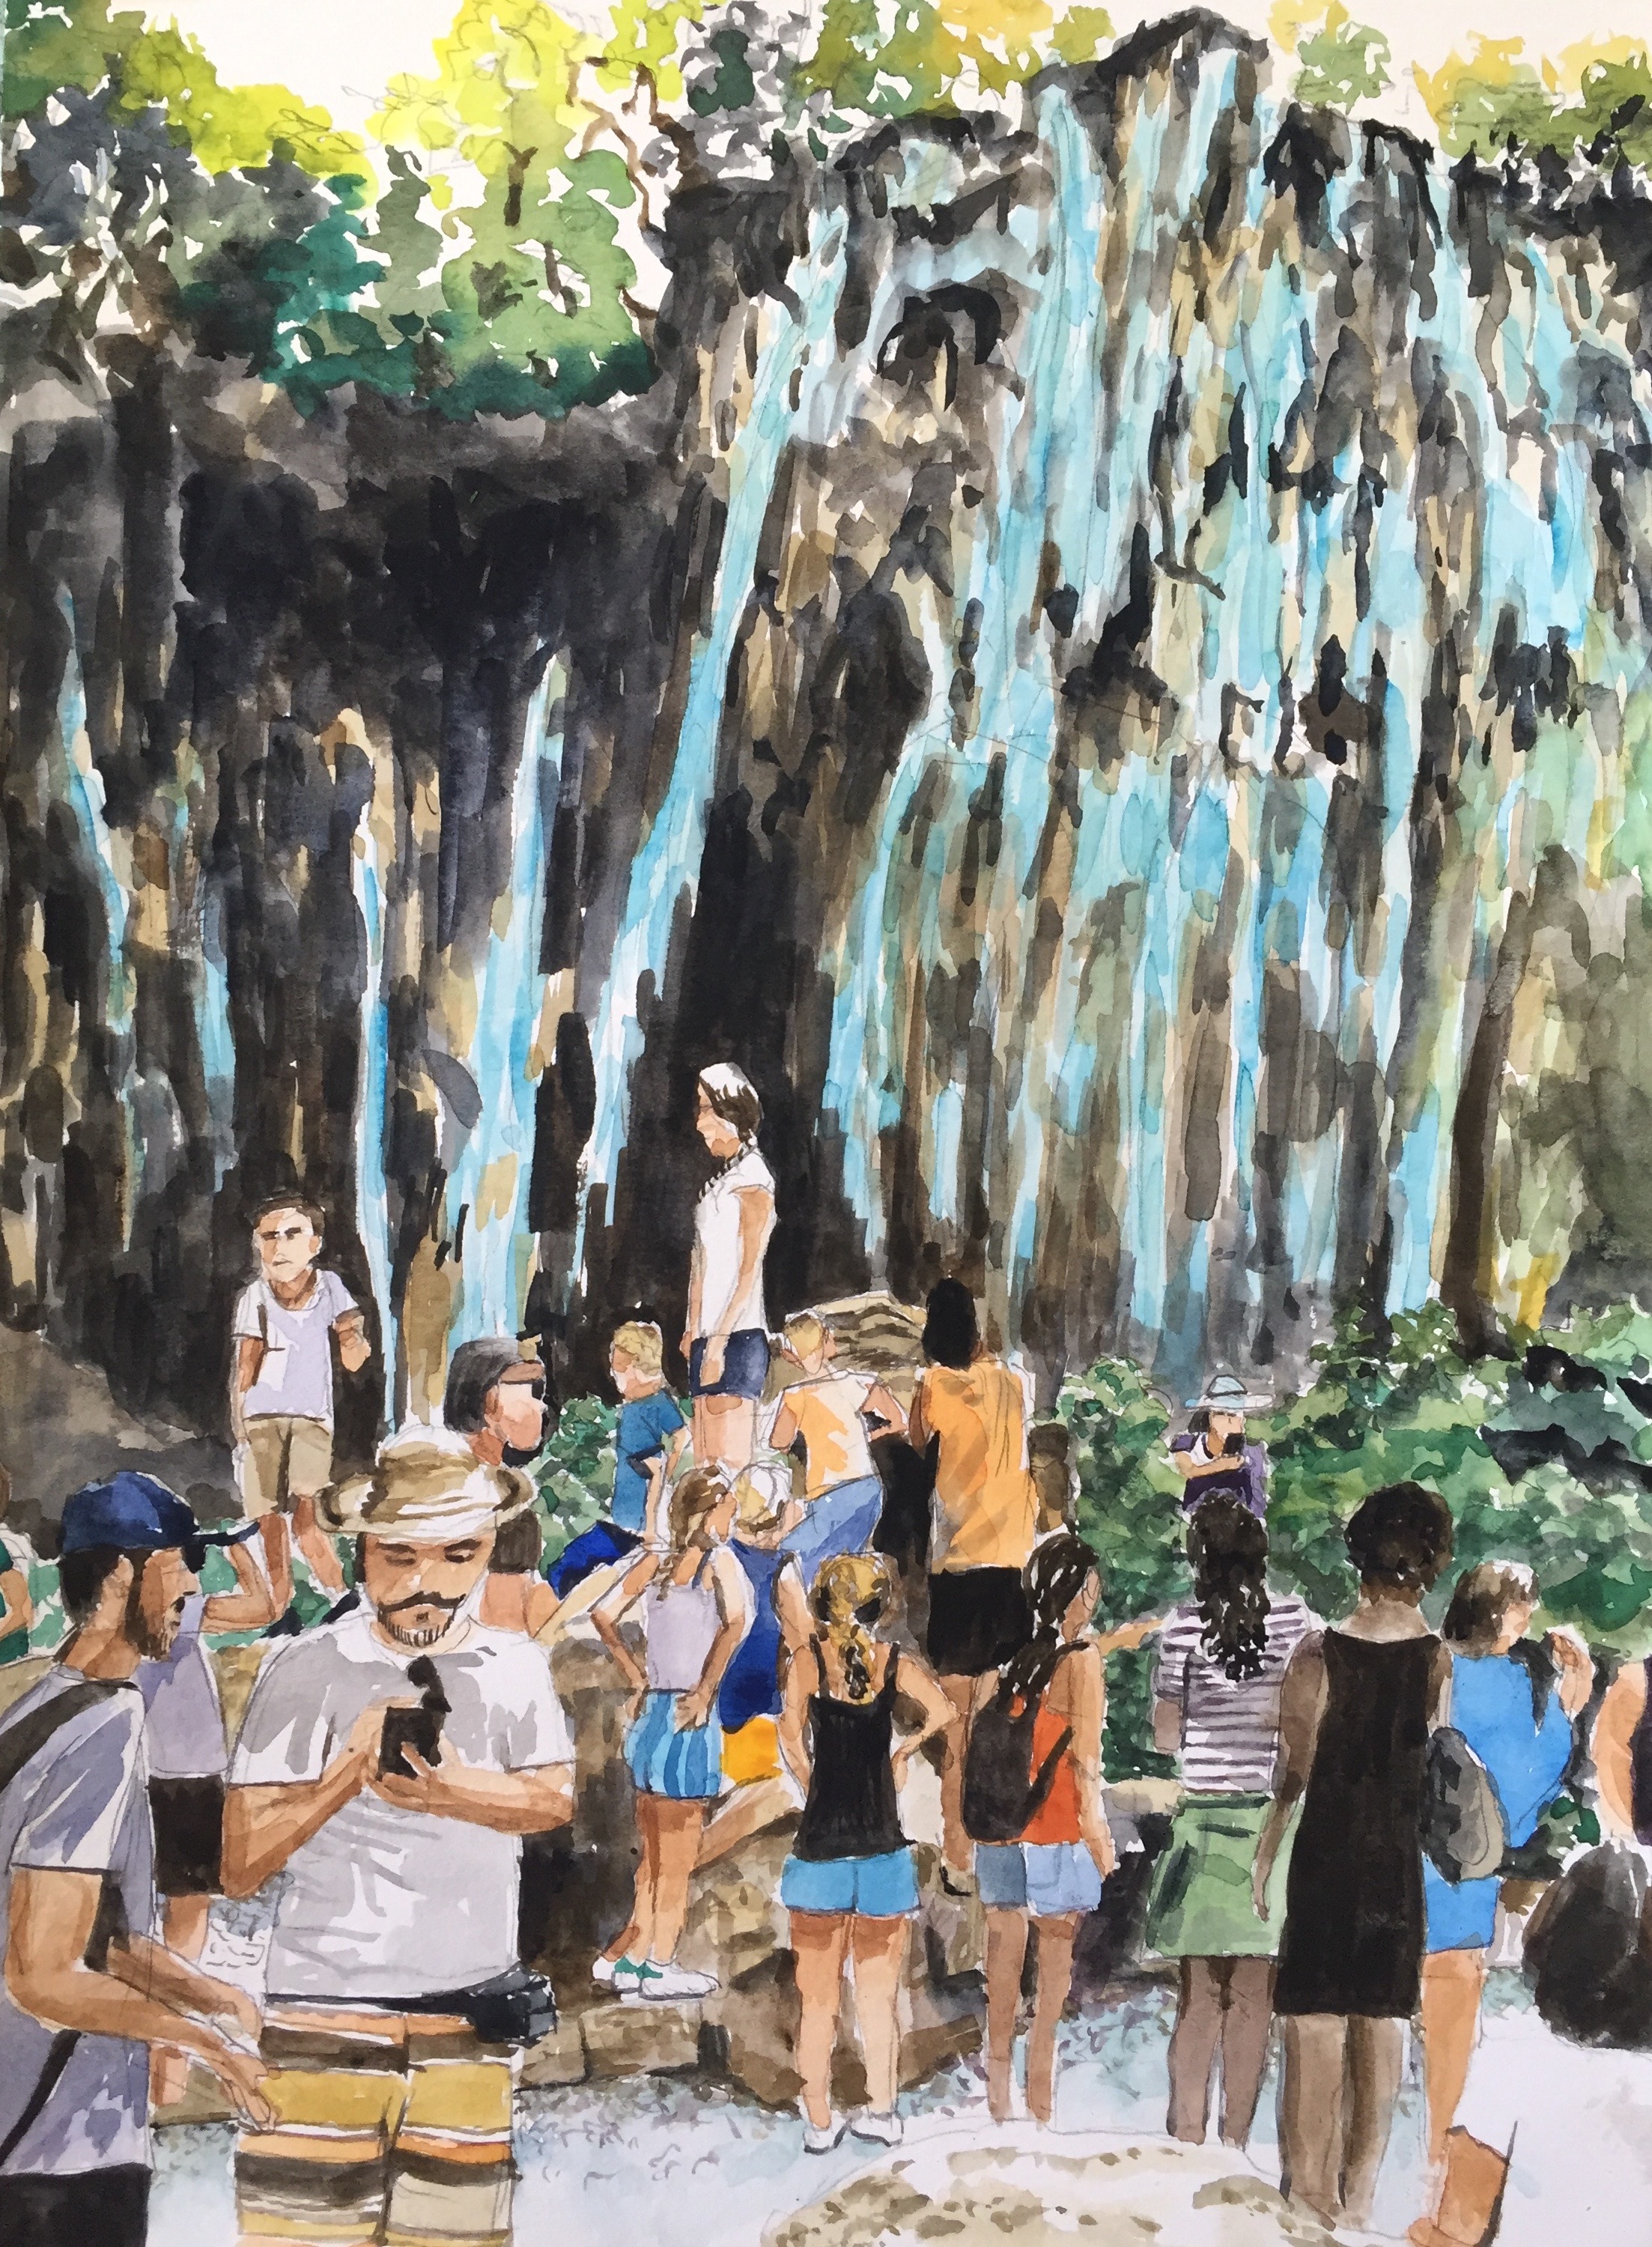 Waterfall Crowd, Croatia, 2018, 15 x 11 in, watercolor